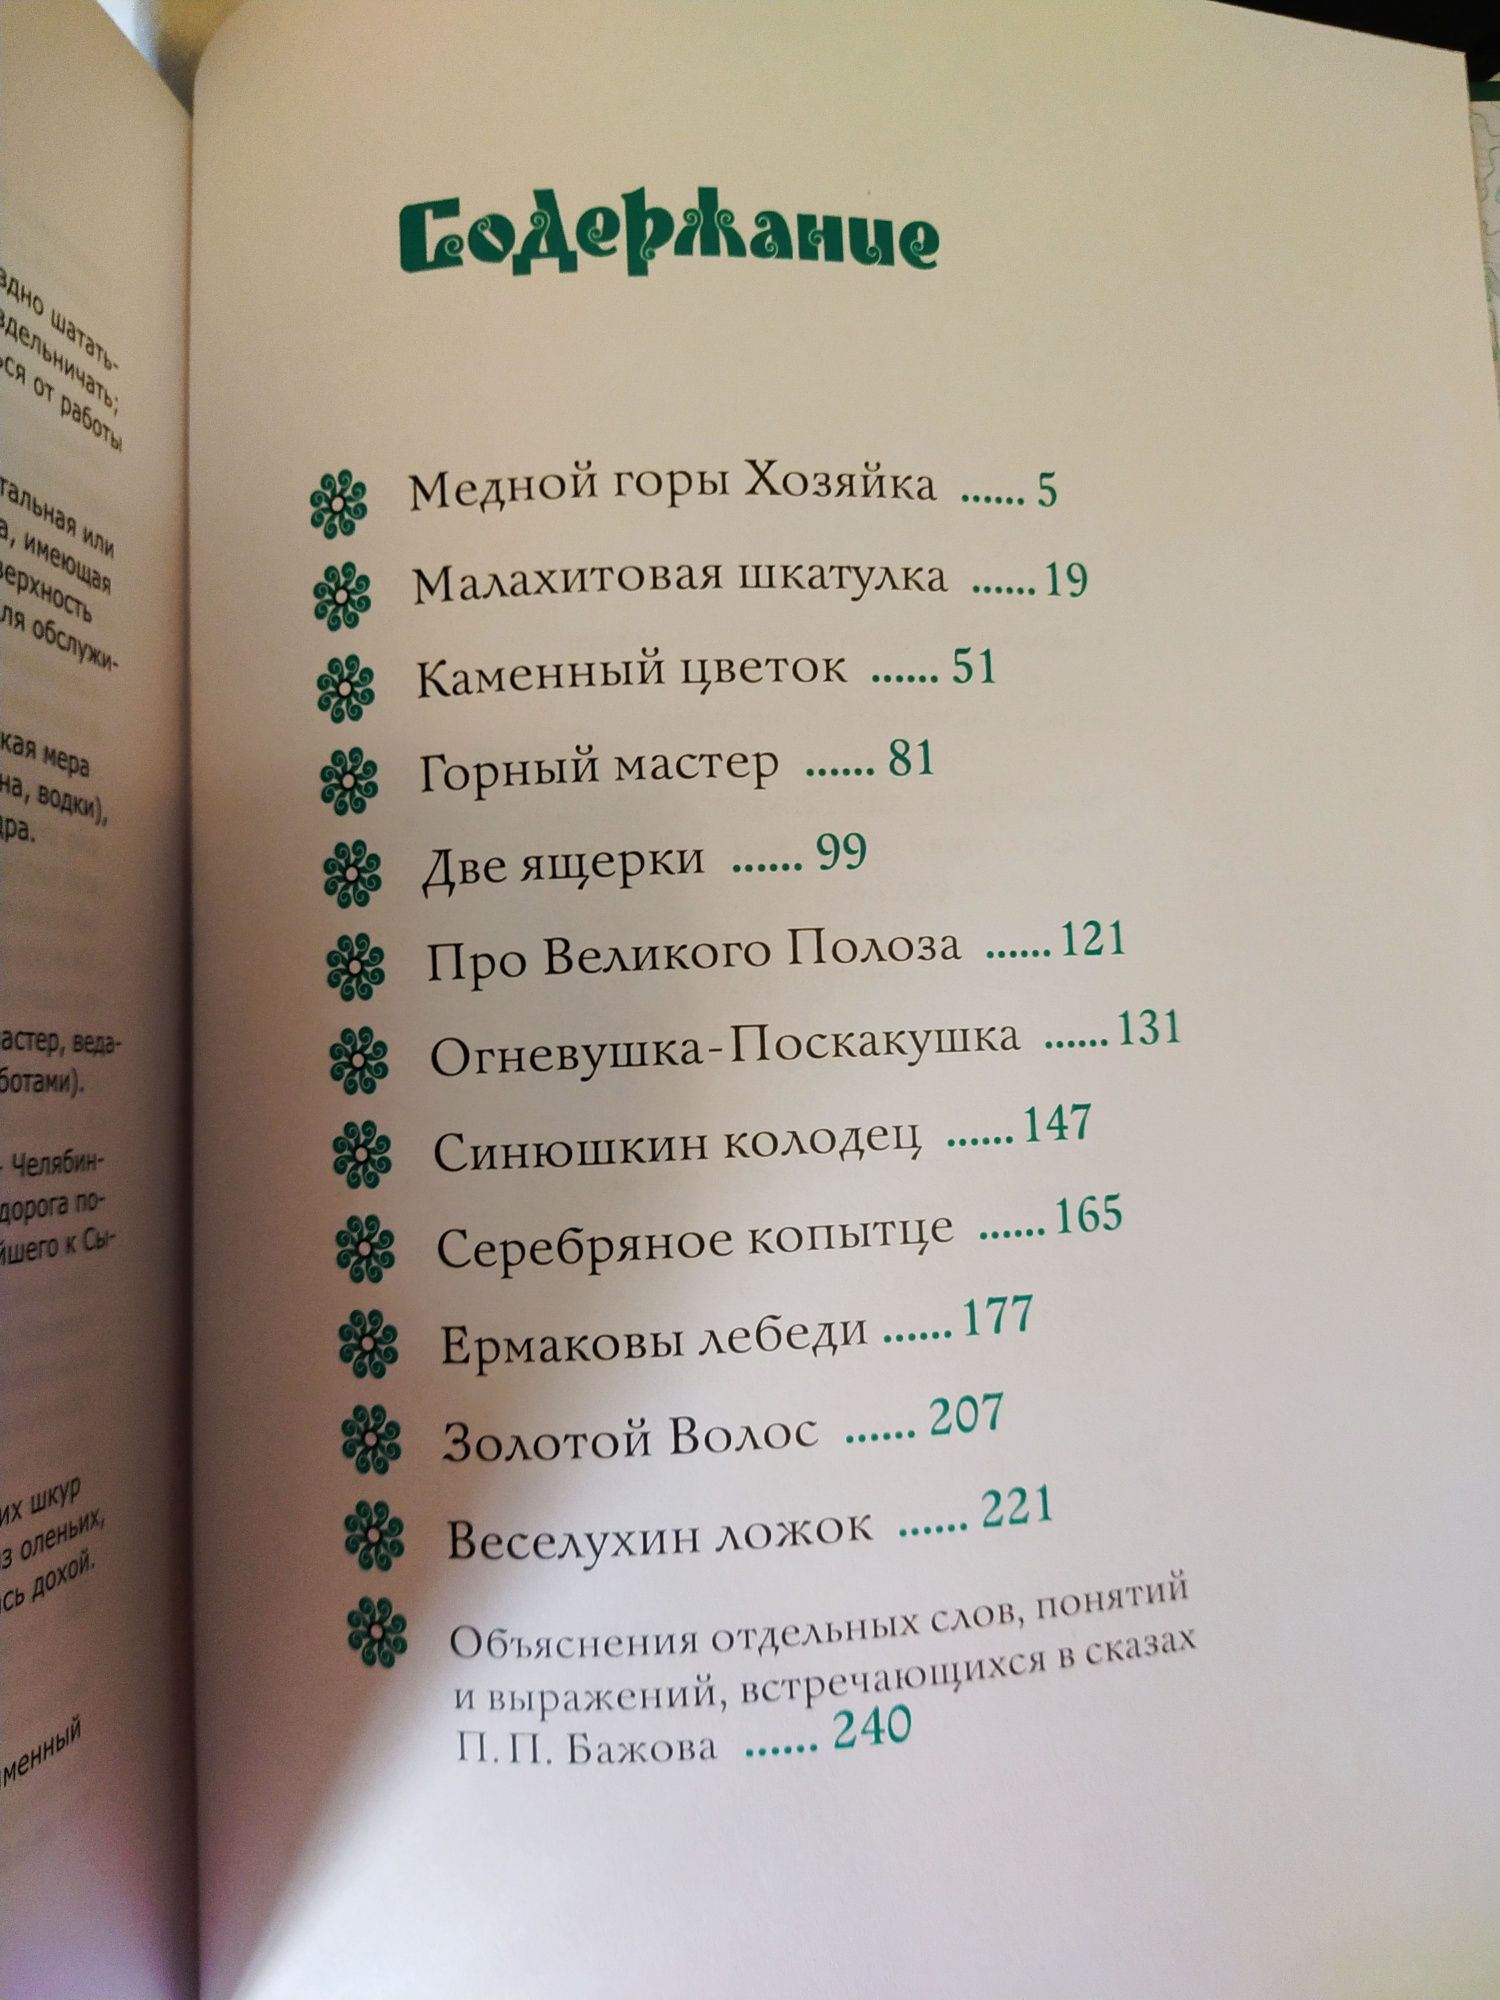 Книжки дитячі російською. Продам.

Продам багато гарних дитячих